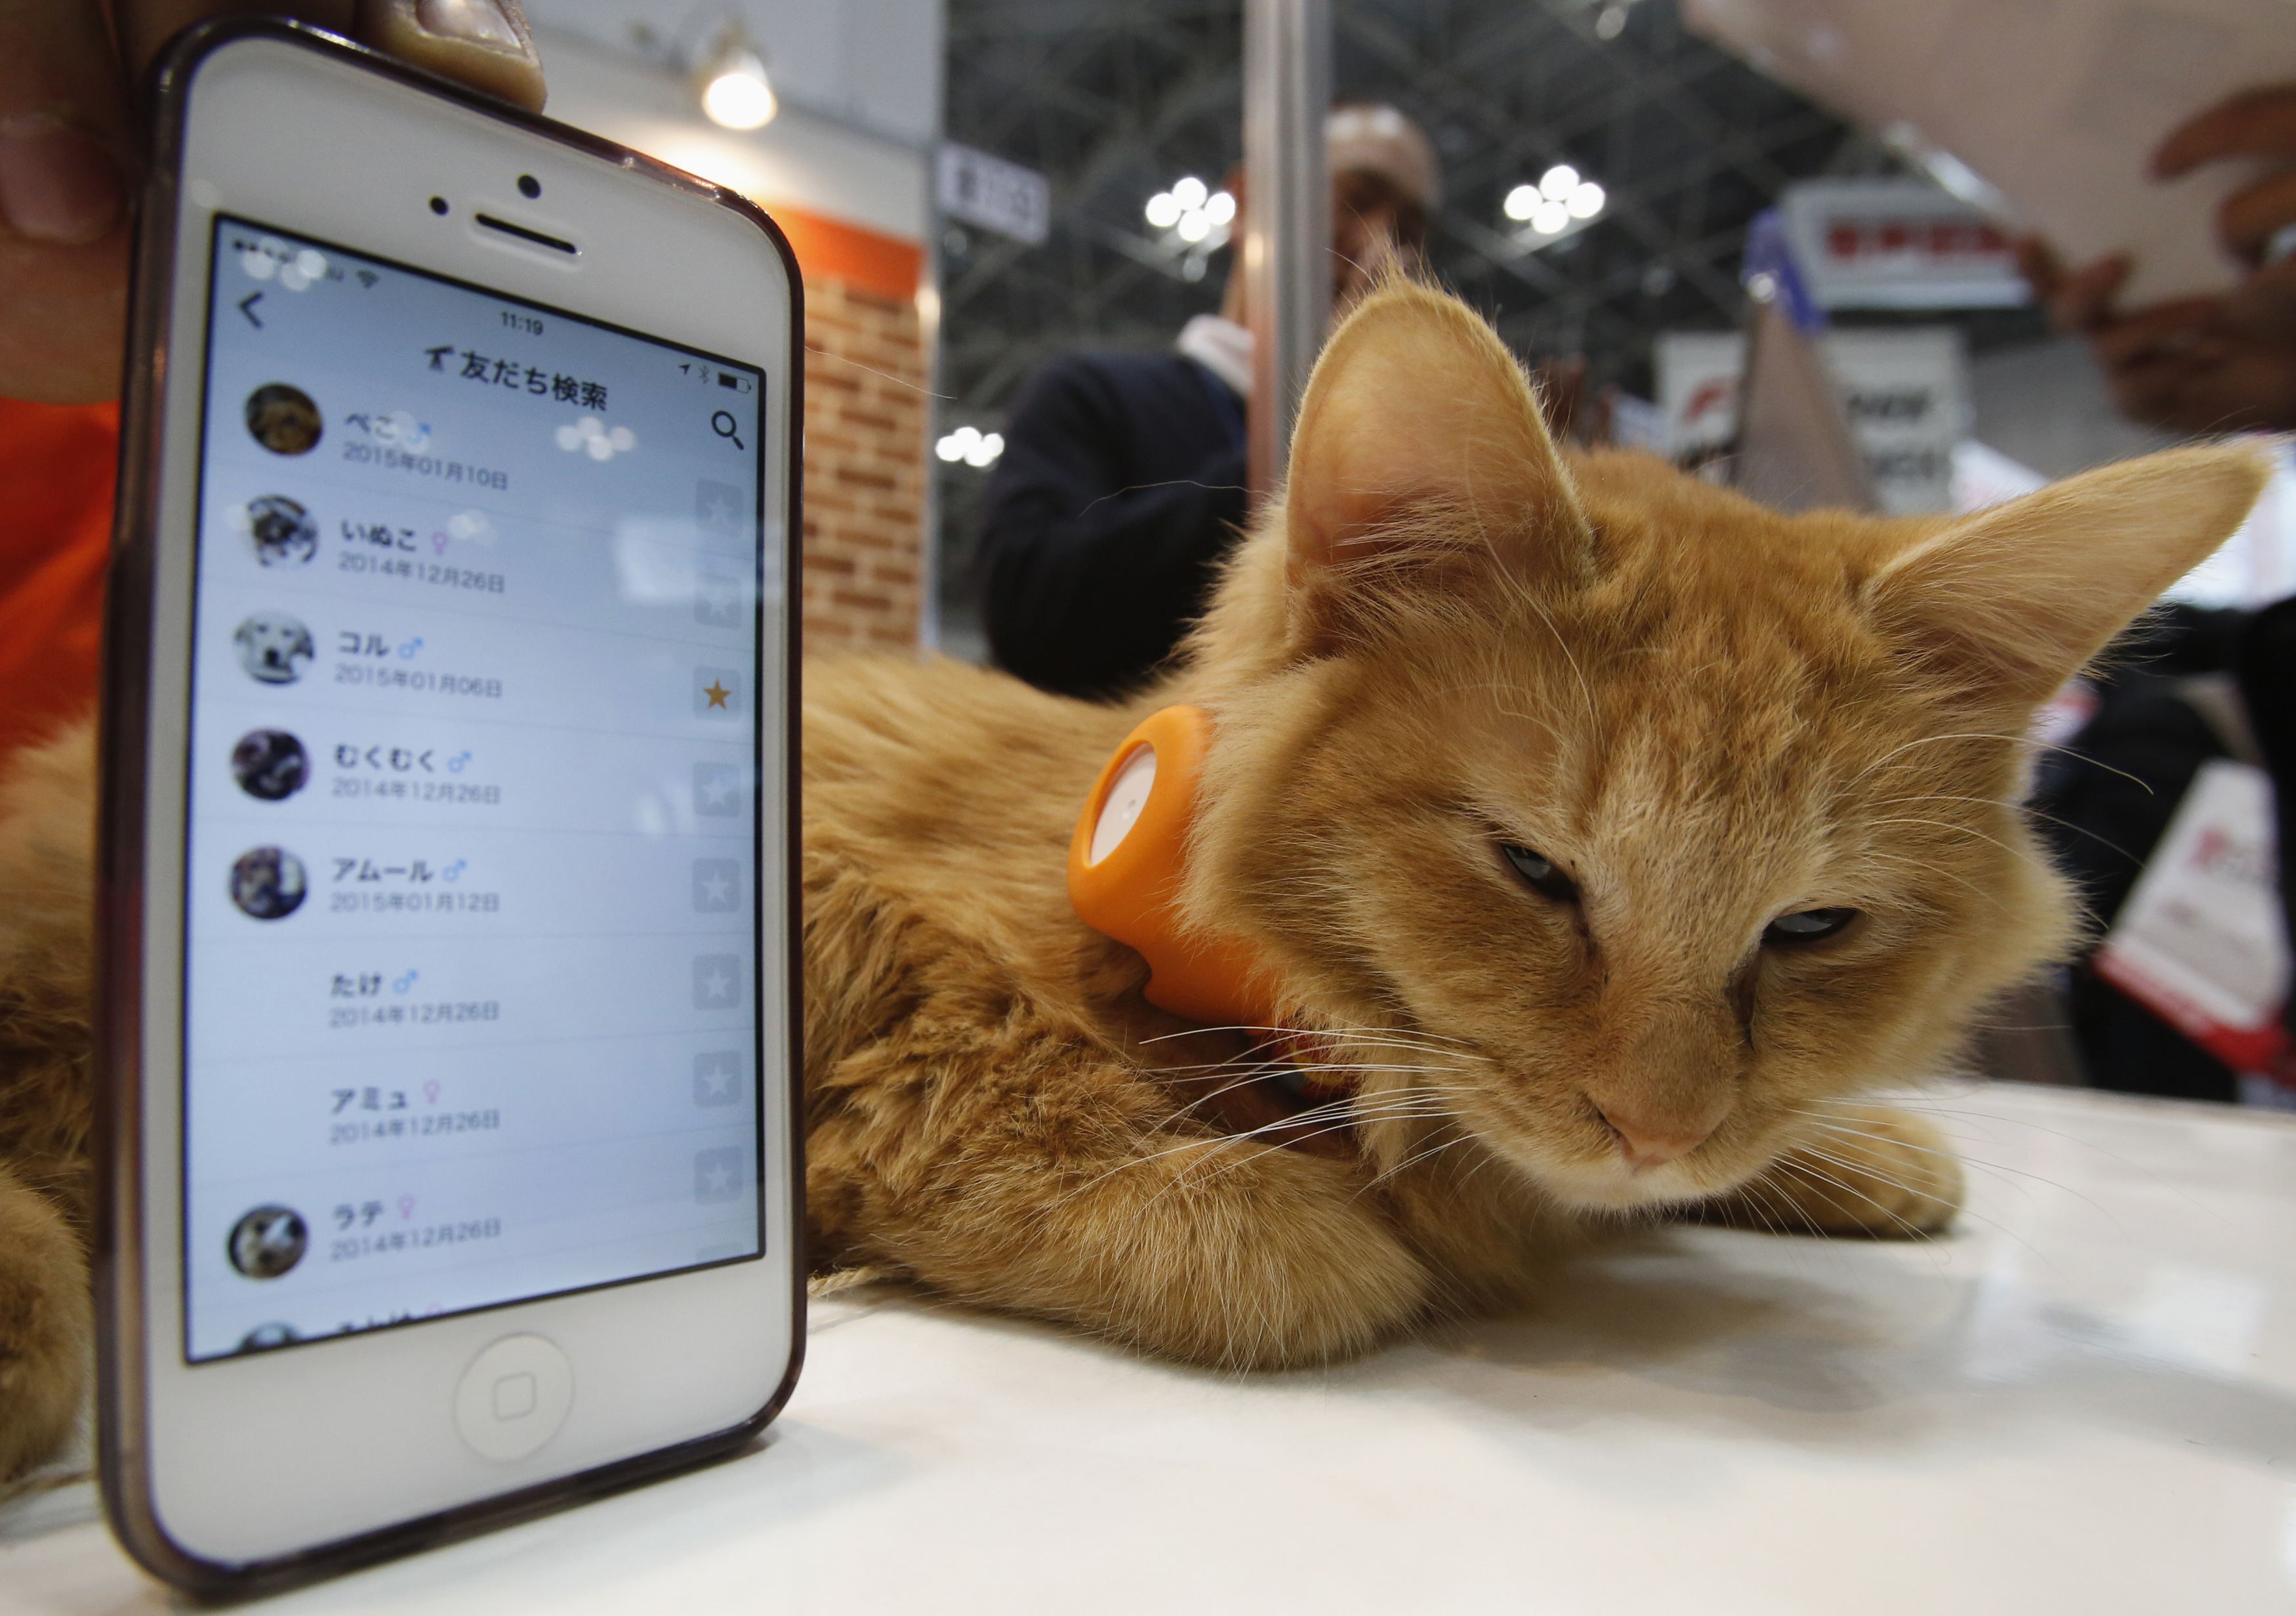 Японцы представили гаджет для связи со своим котом